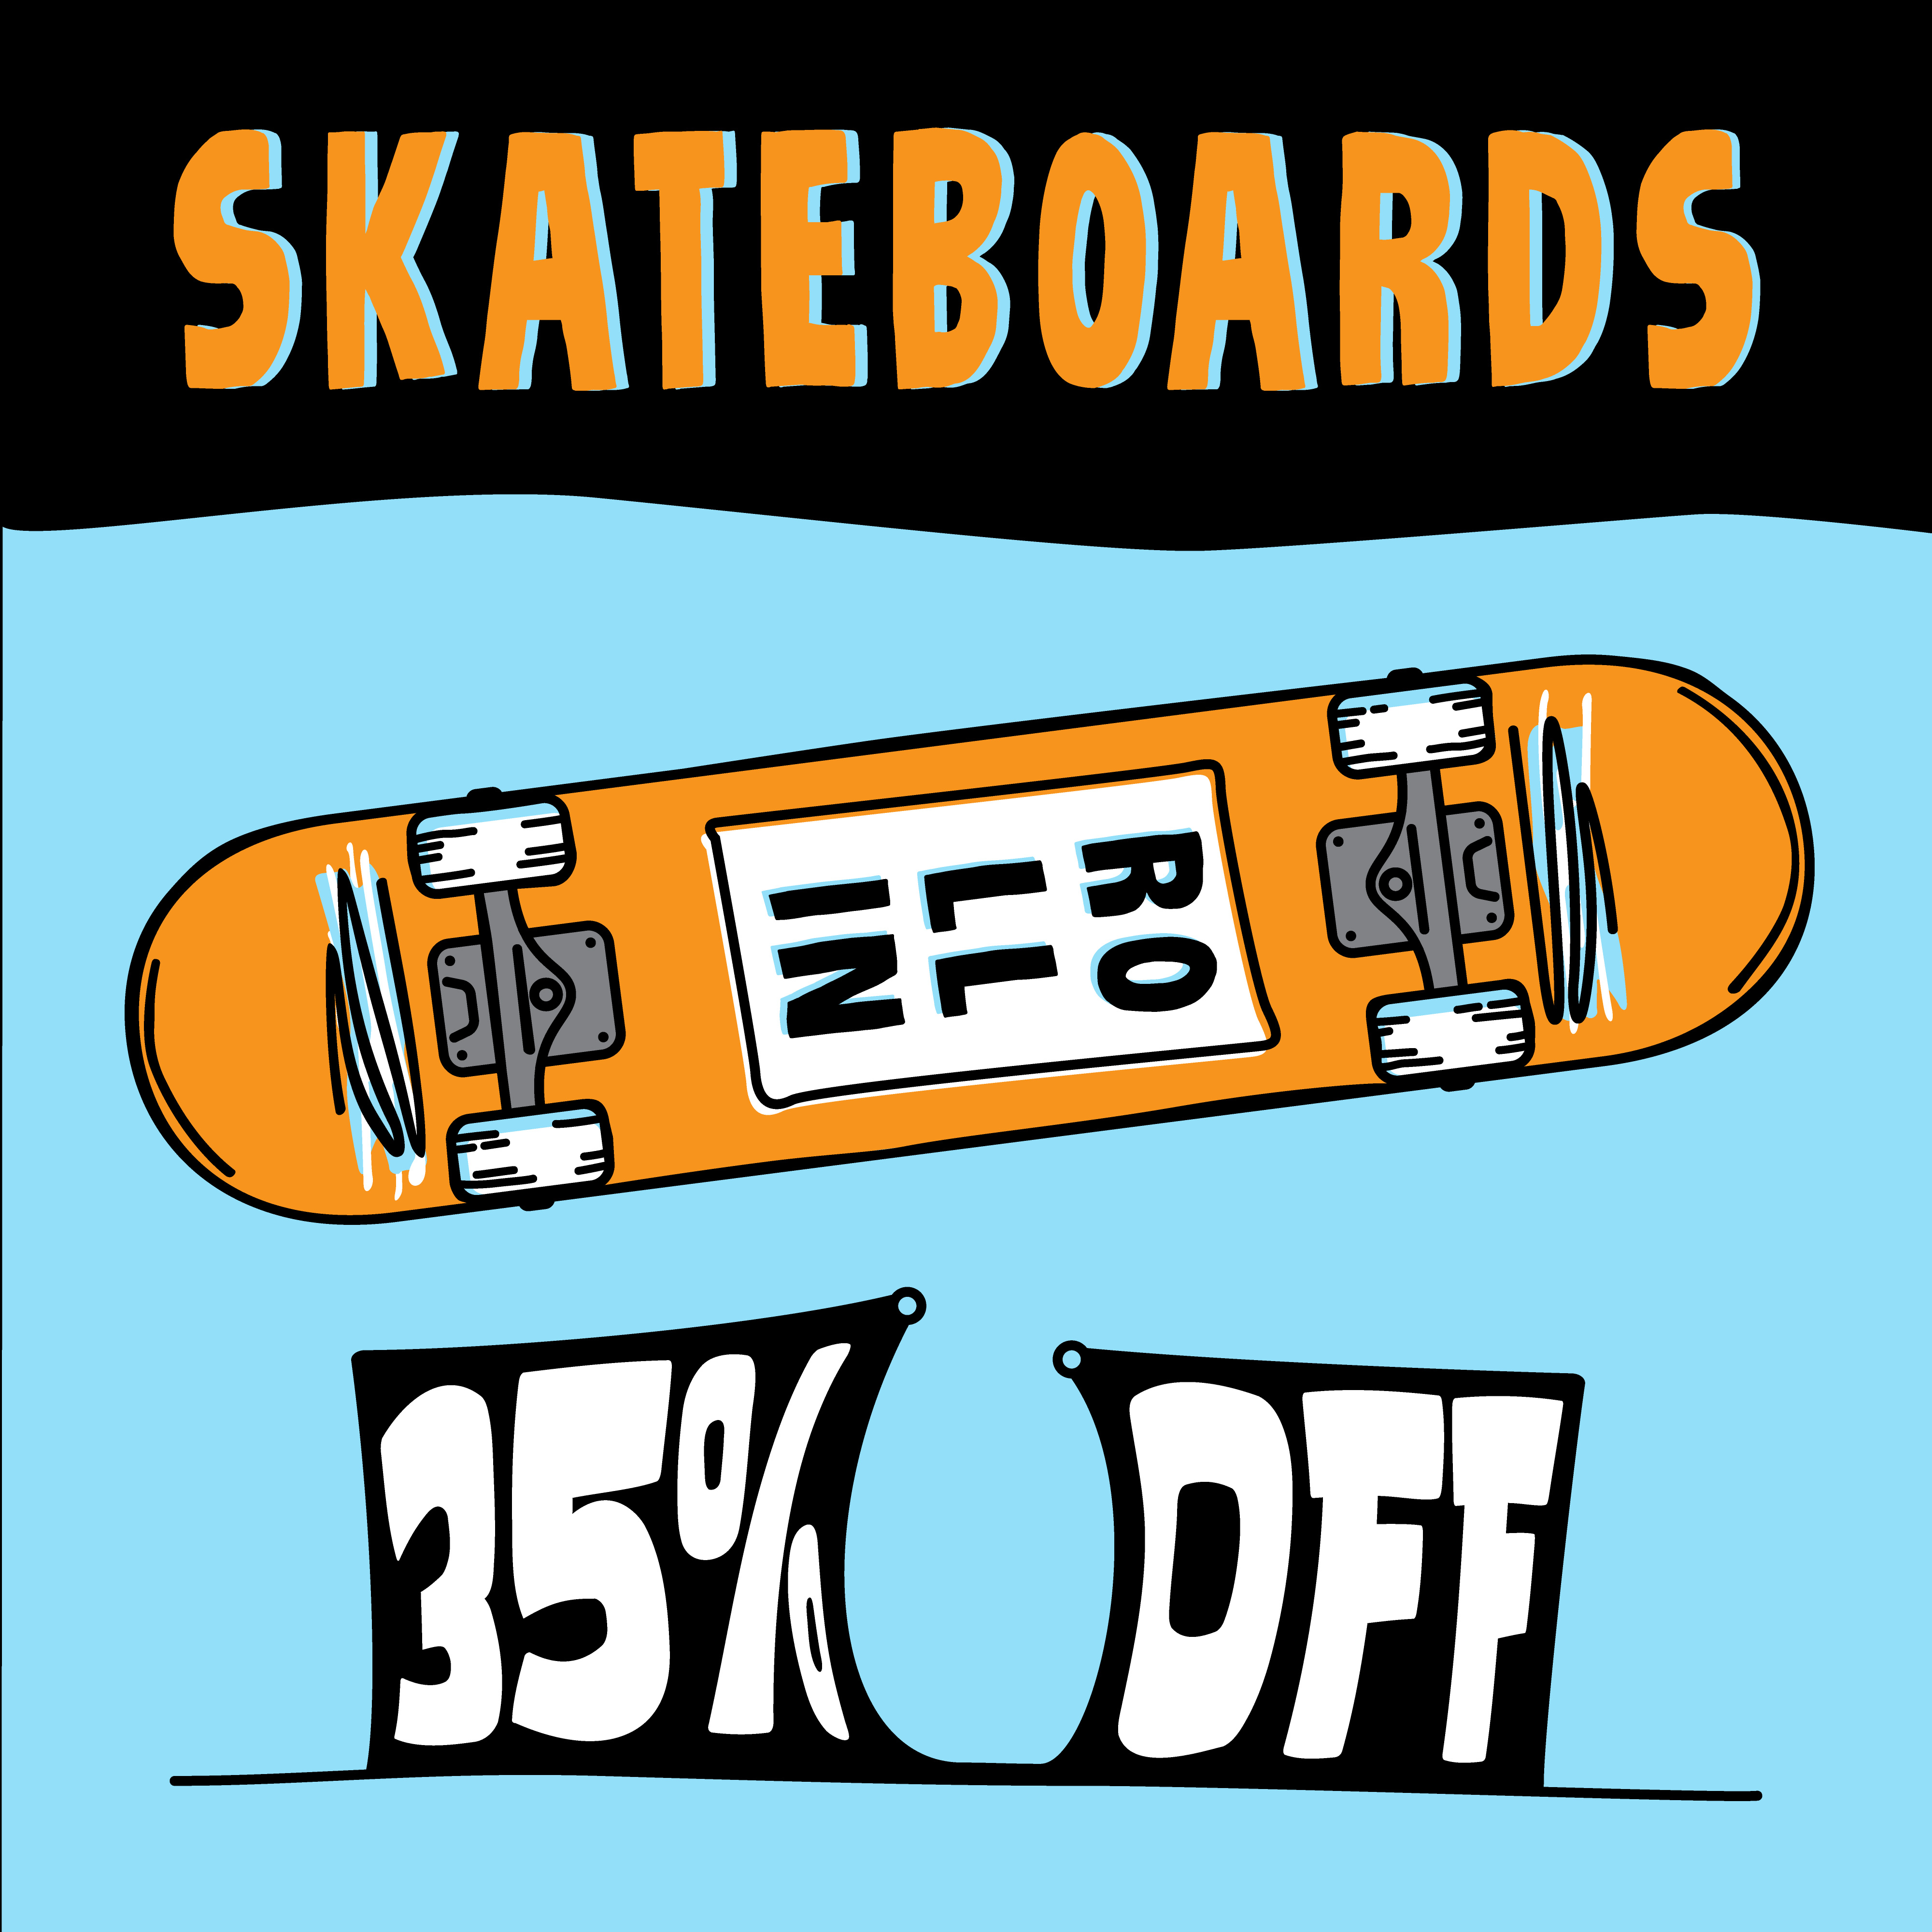 Skateboards 35% Off